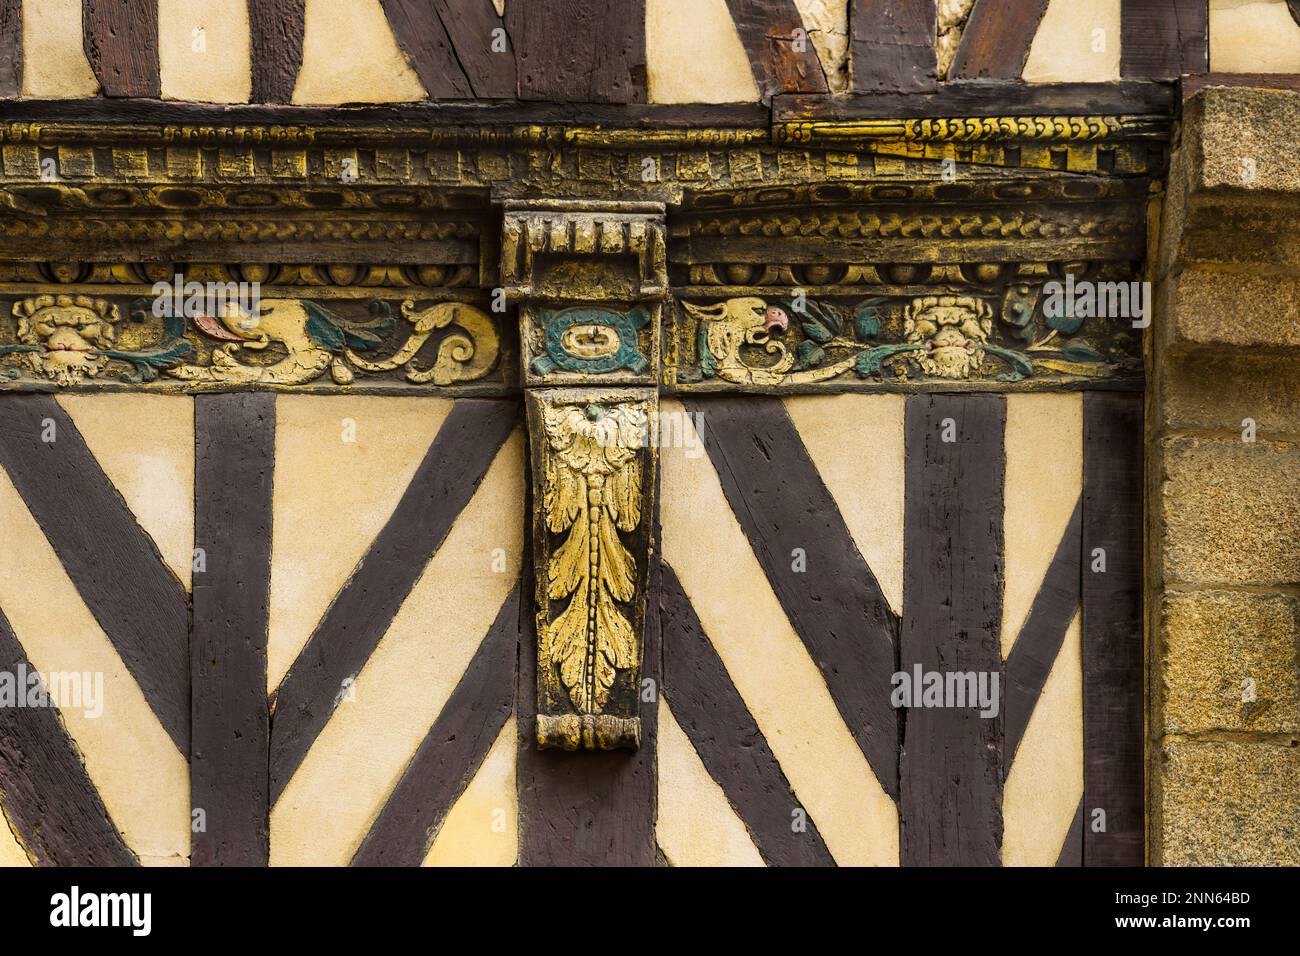 Détail ornemental d'une maison médiévale typique à colombages dans la ville française de Rennes. Banque D'Images